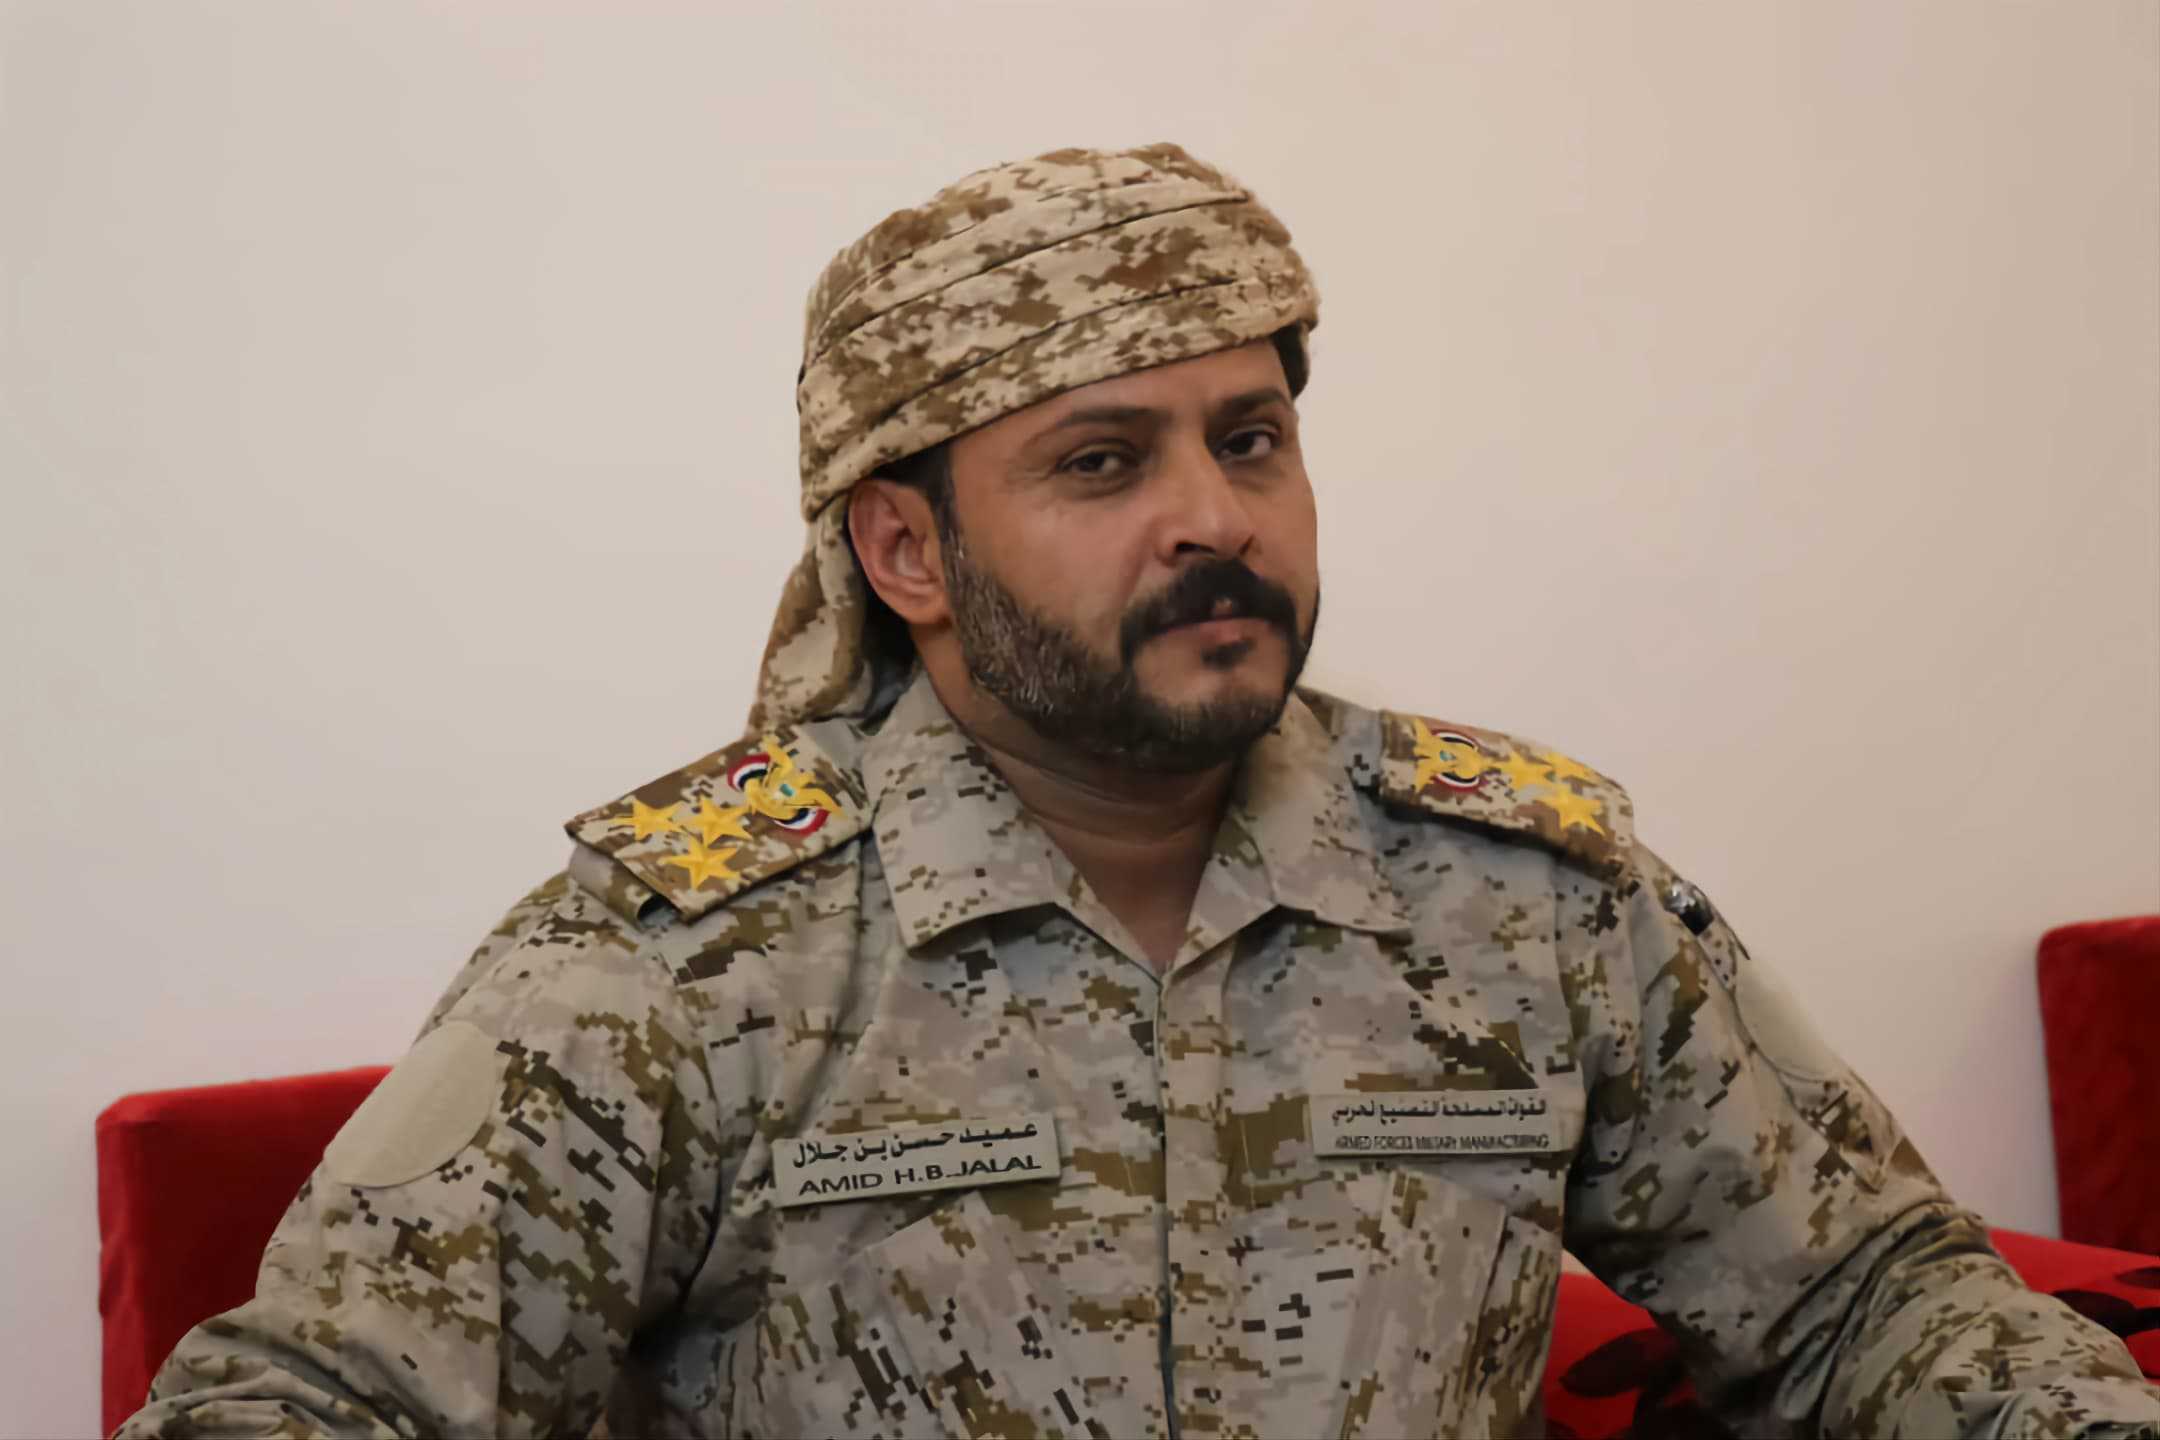 واقعة اللواء اليمني العسكري